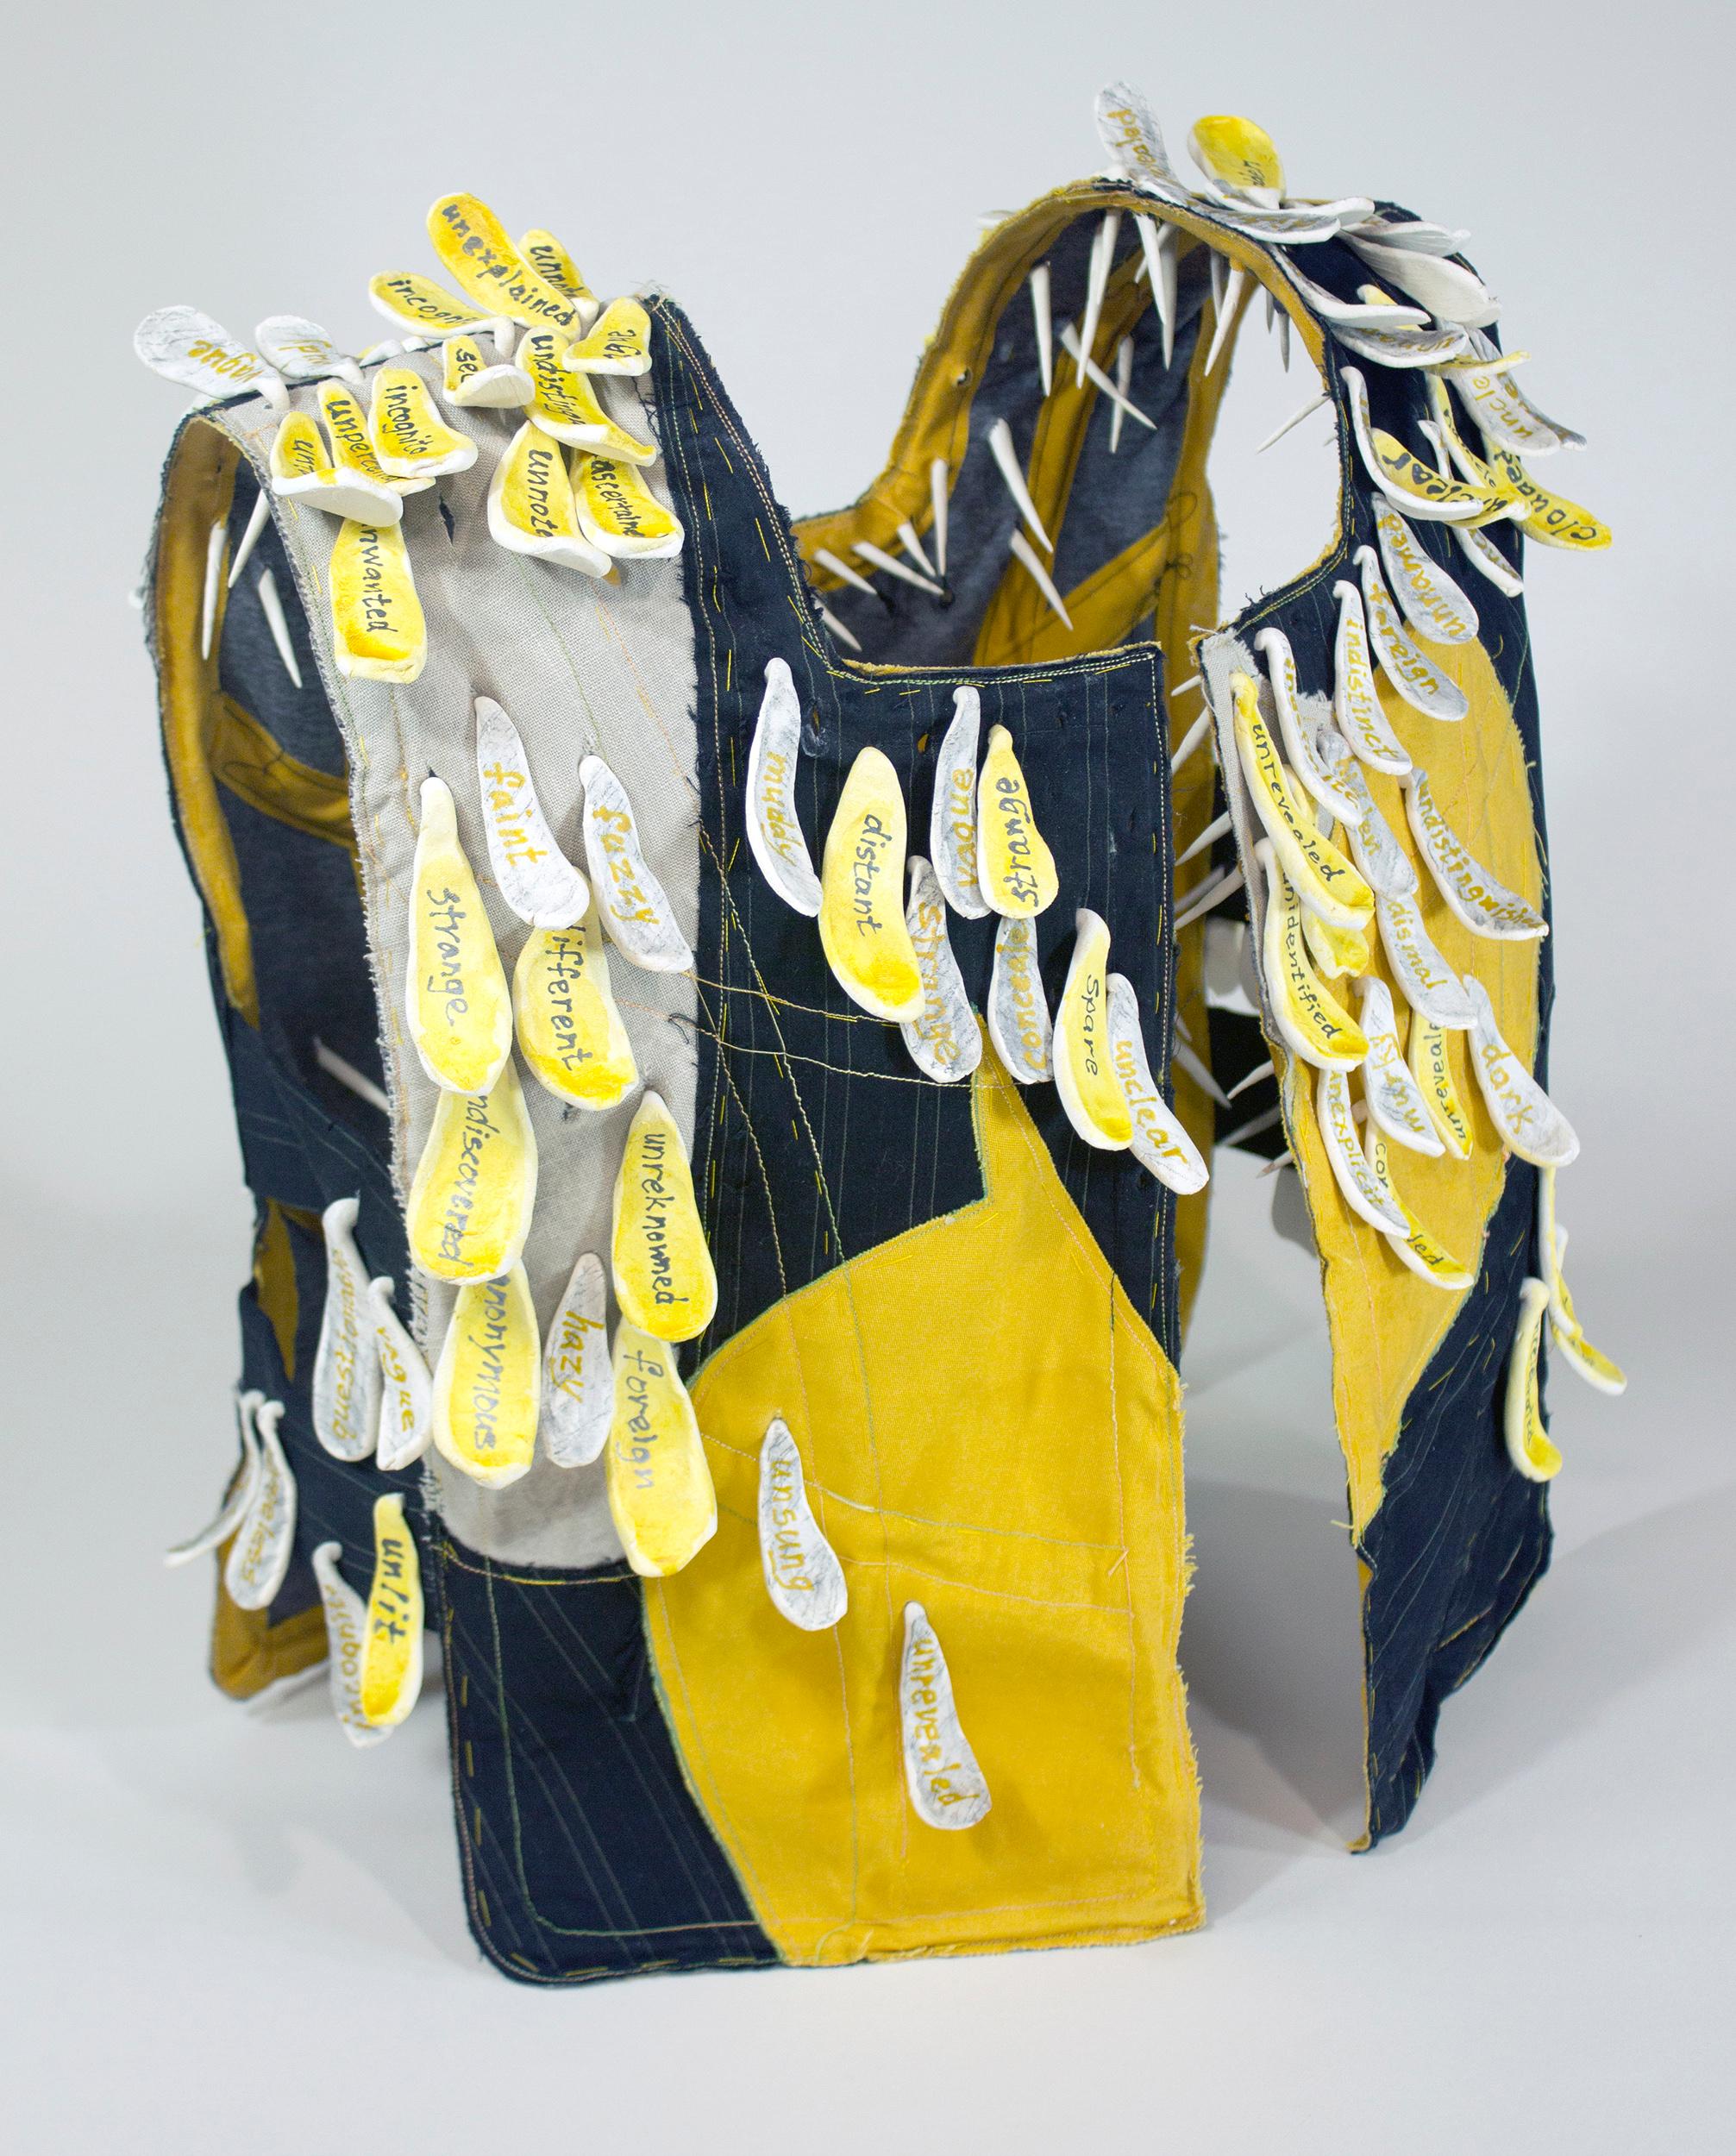 "Caution", ceramic, vest, black, bright, yellow, mixed media, sculpture